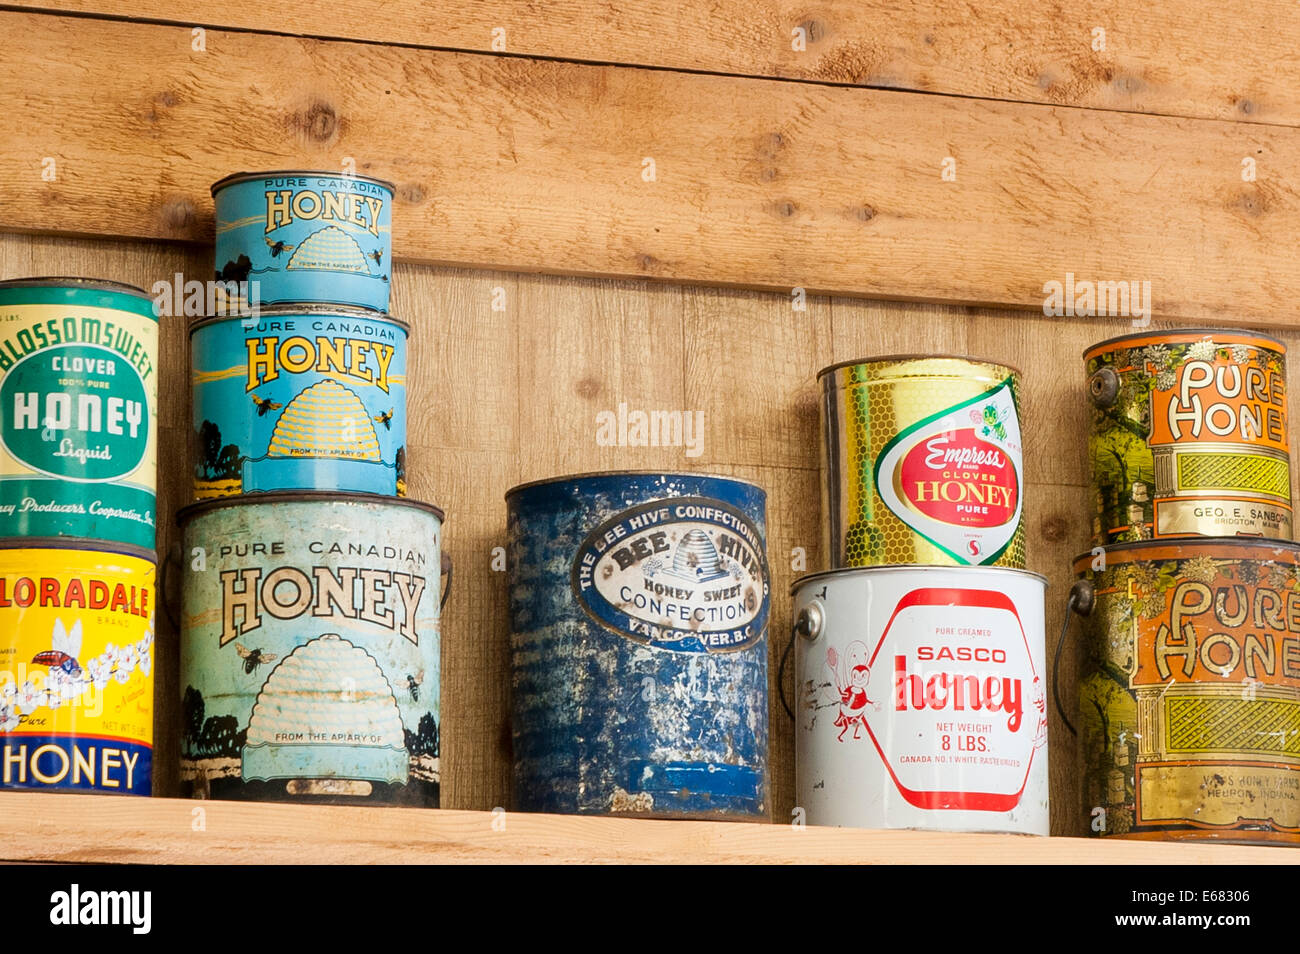 Antique vintage viejas latas de miel en el valle del río Chilliwack Chilliwack, Honey Farm, British Columbia, Canadá. Foto de stock